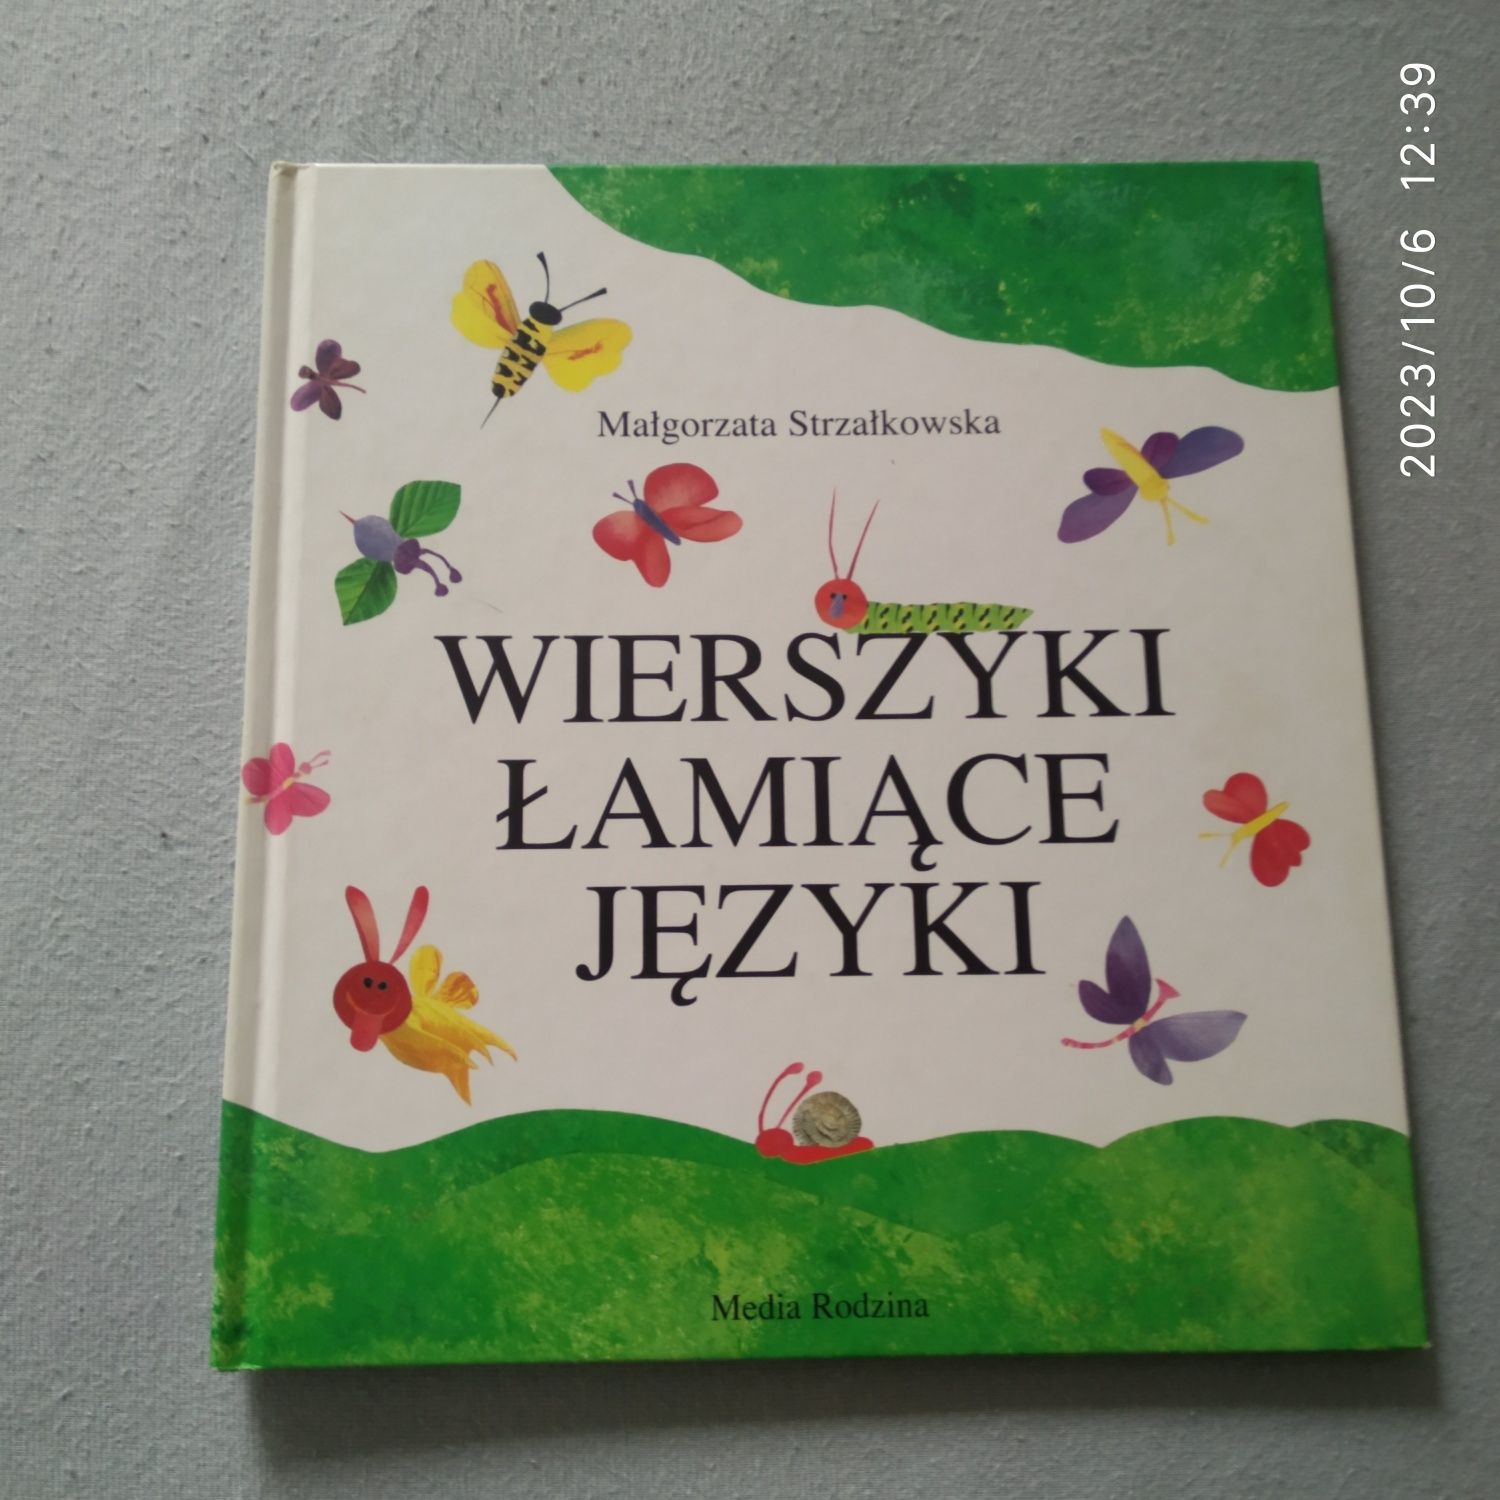 Dwie książki wiersze W. Chotomska i M. Strzałkowska